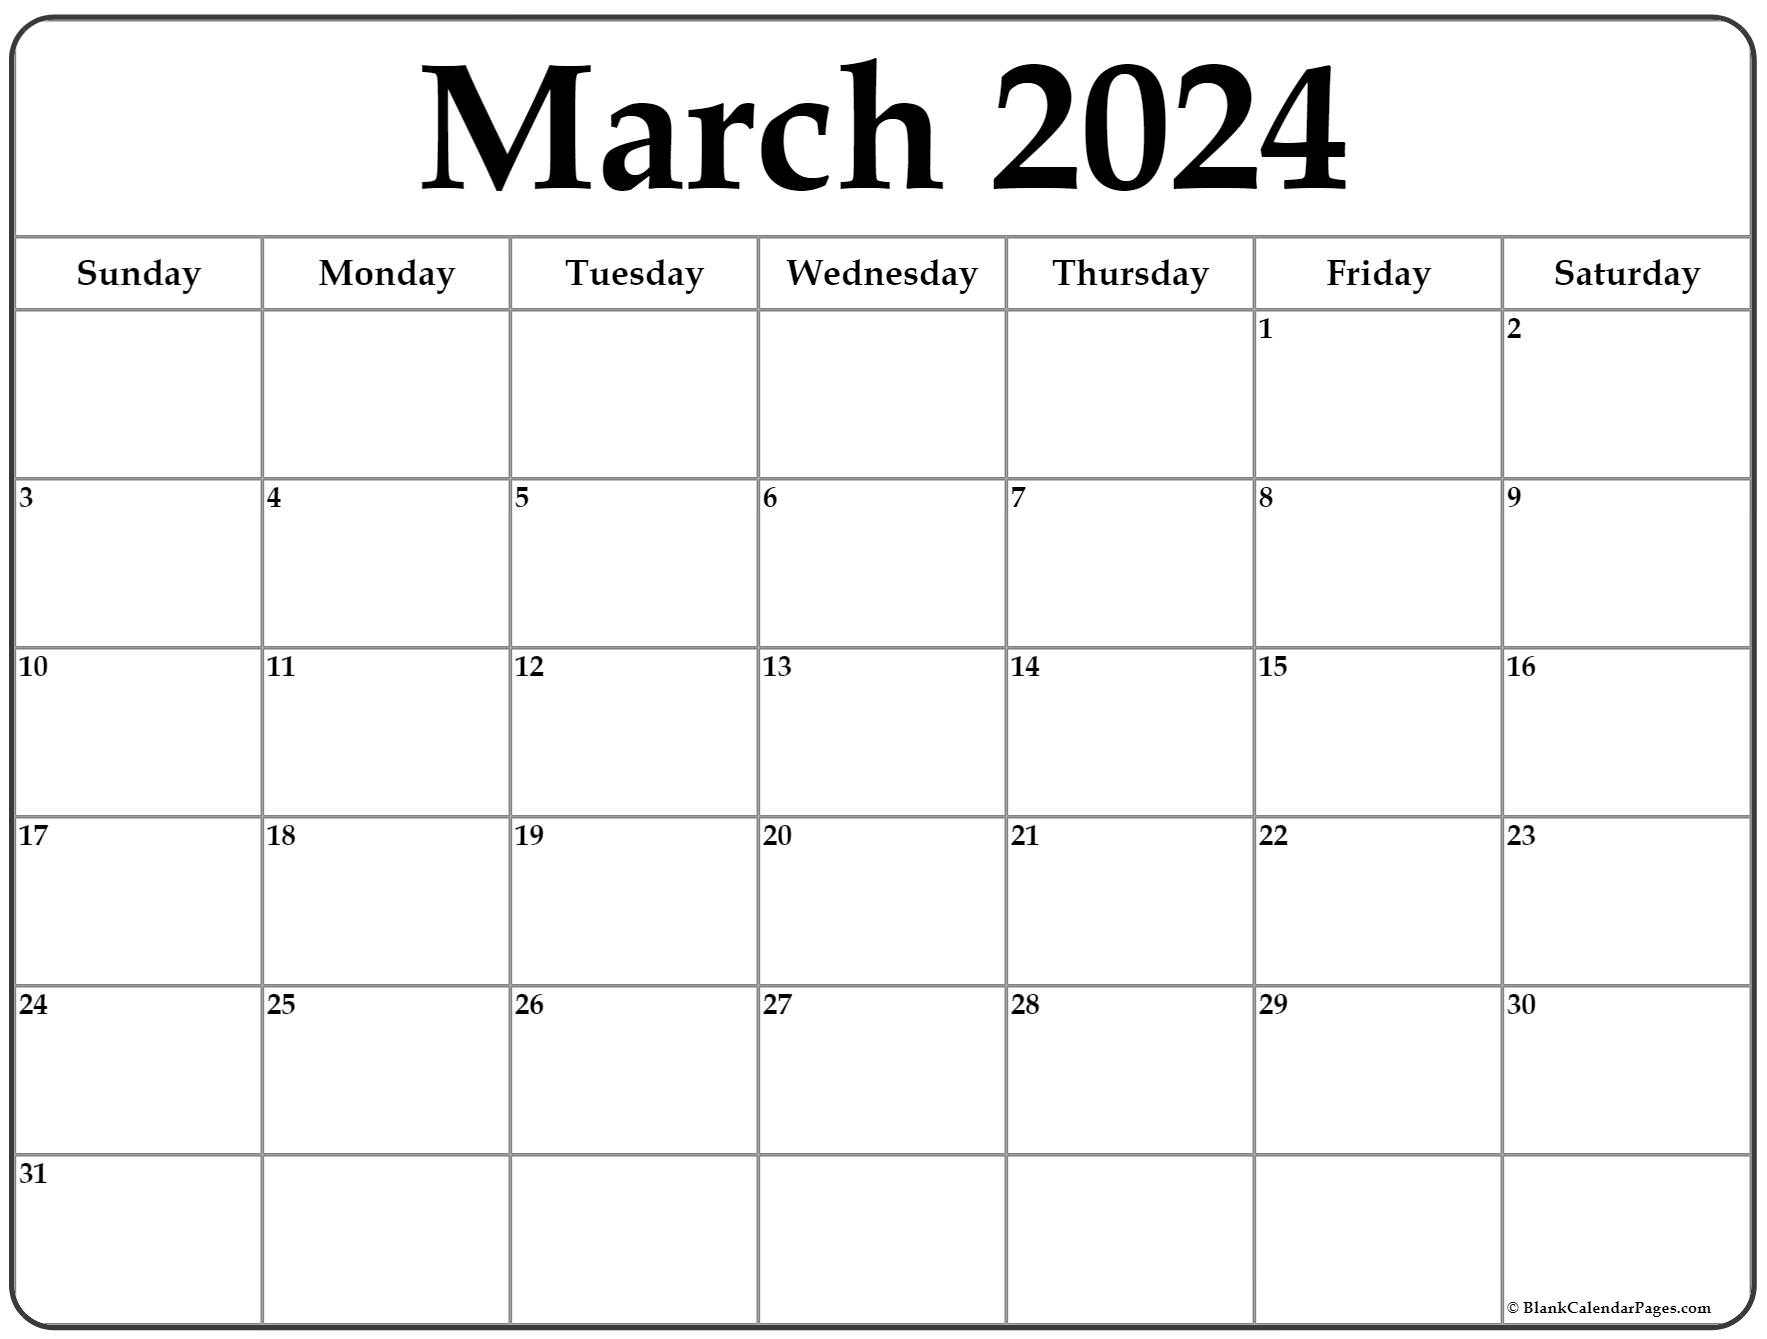 March 2022 calendar free printable calendar templates